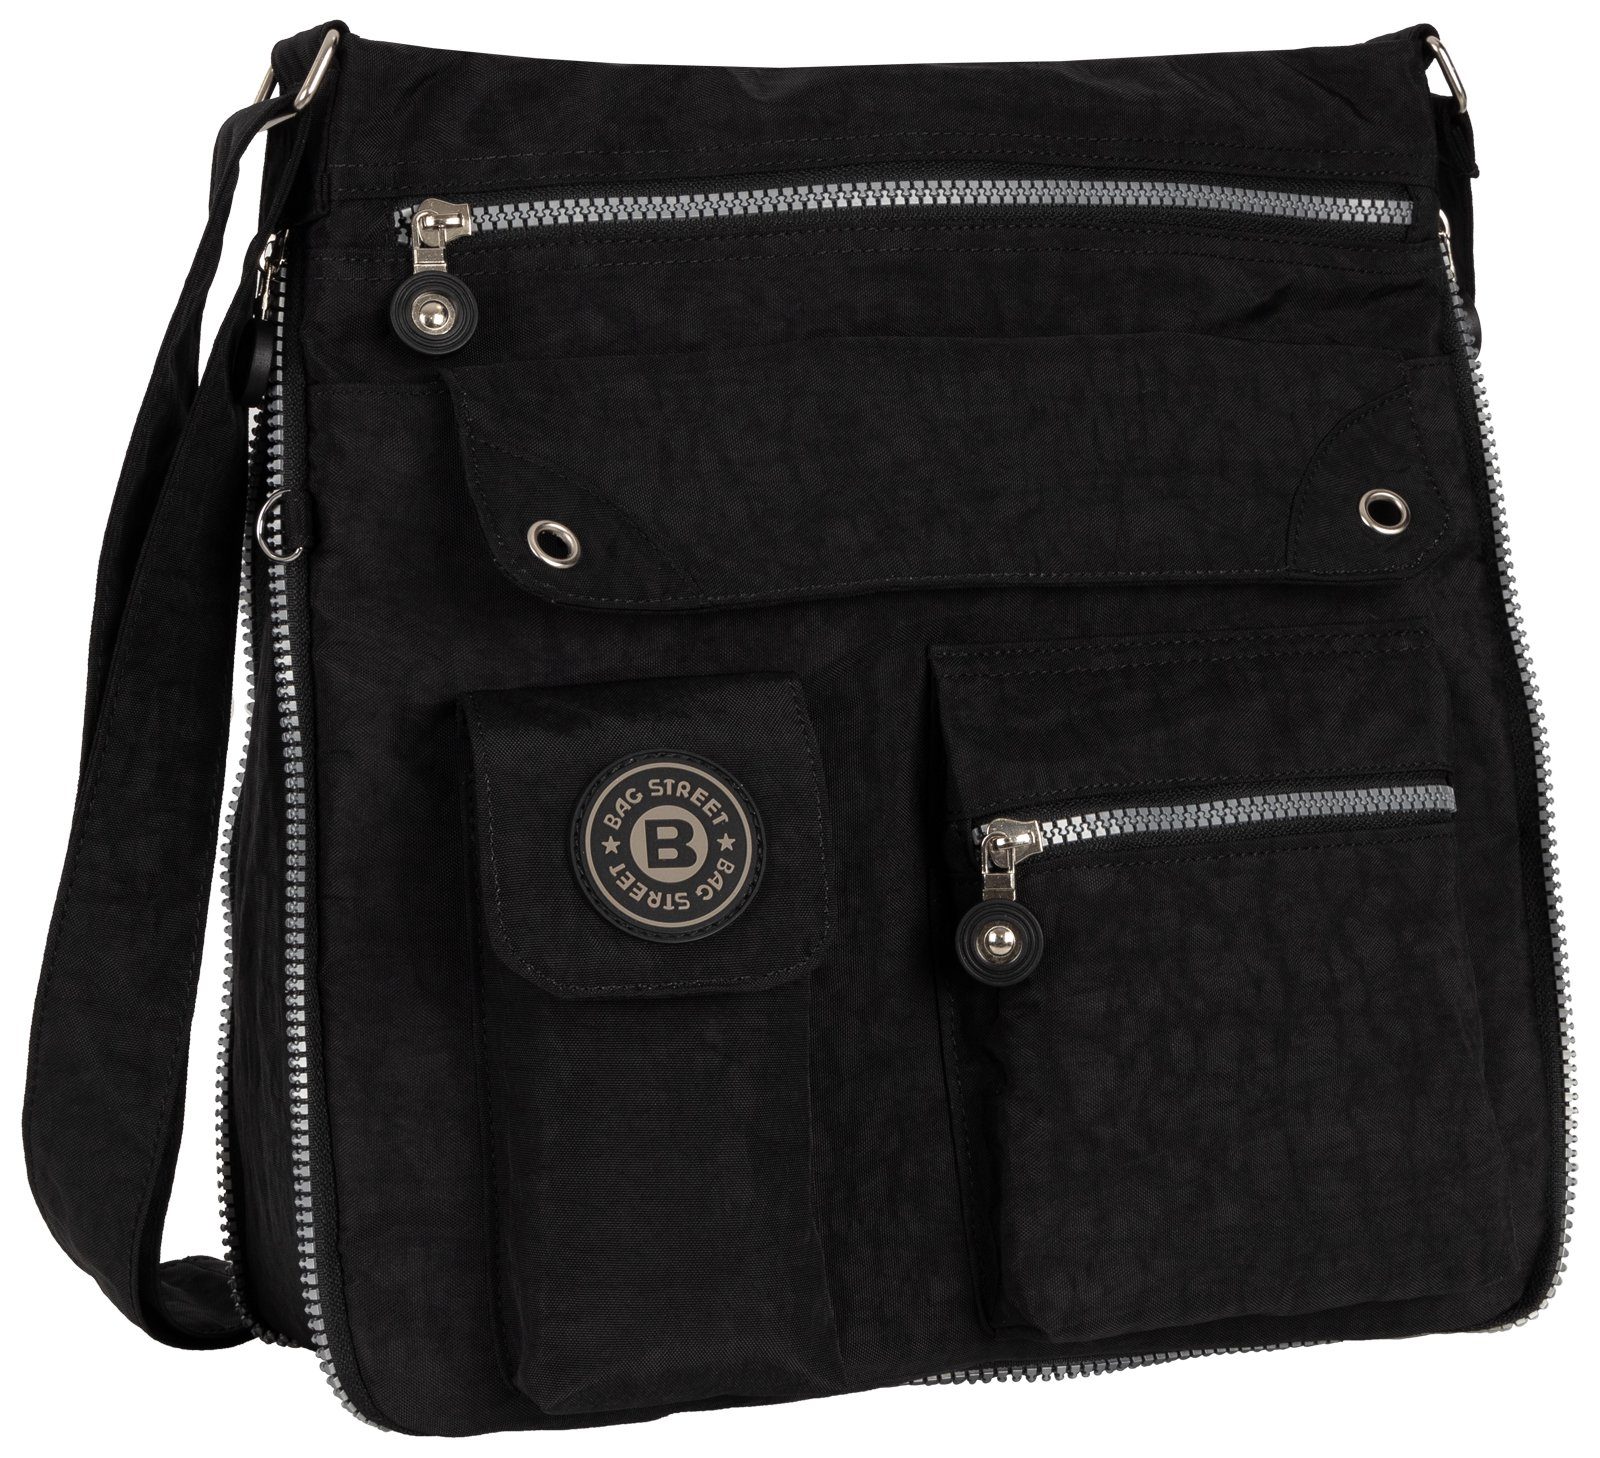 BAG STREET Schlüsseltasche Damentasche Umhängetasche Handtasche Schultertasche Schwarz, als Schultertasche, Umhängetasche tragbar